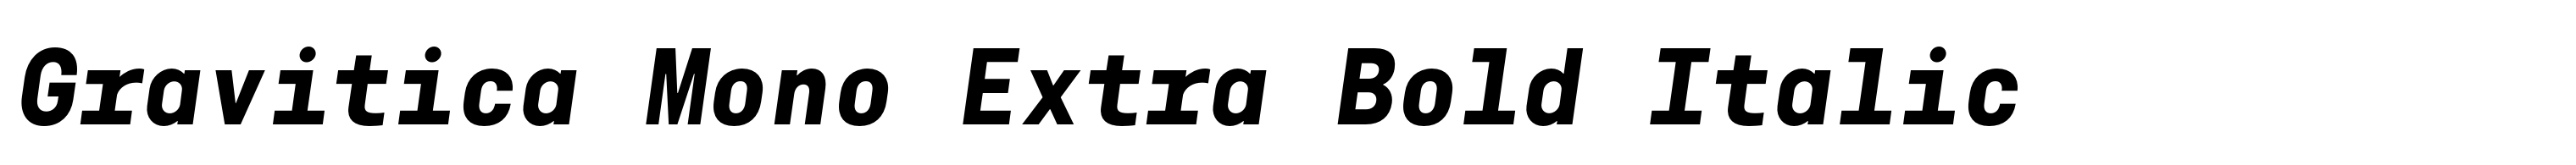 Gravitica Mono Extra Bold Italic